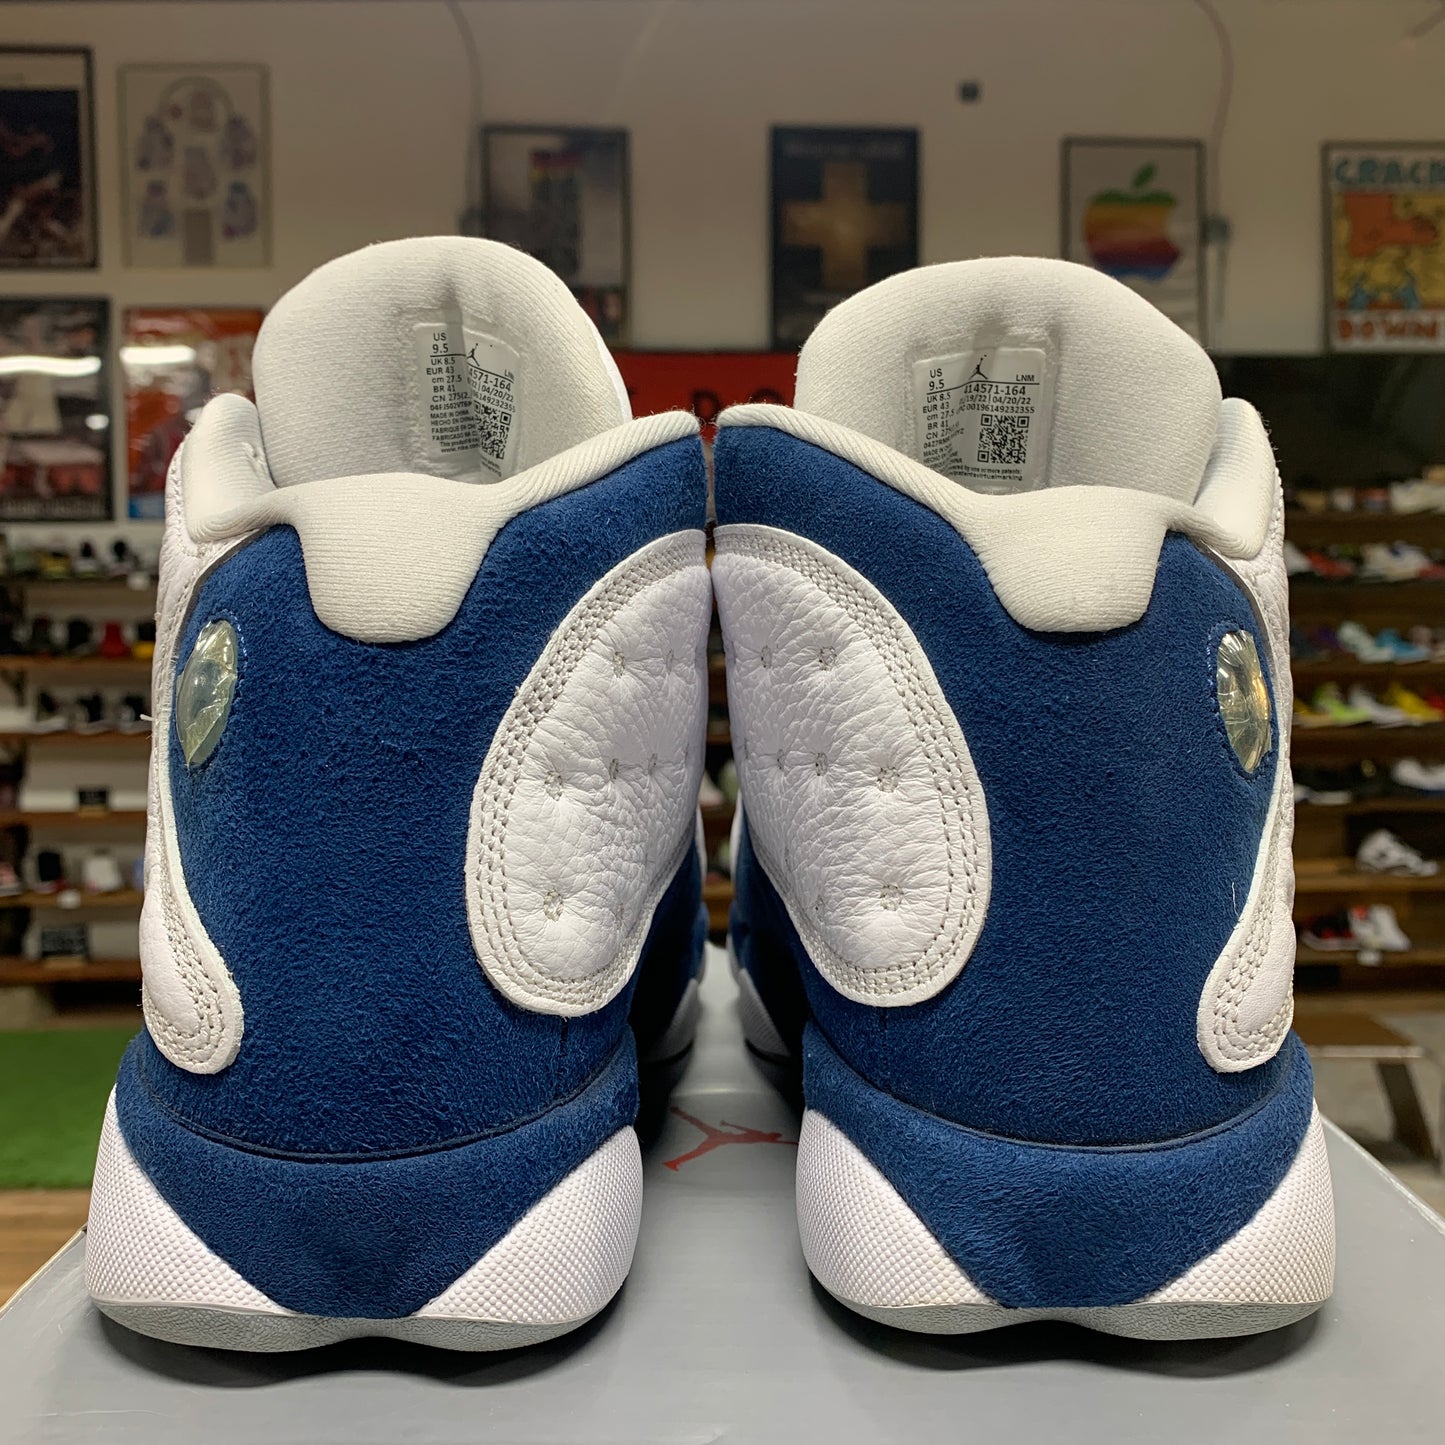 Jordan 13 'French Blue' Size 9.5